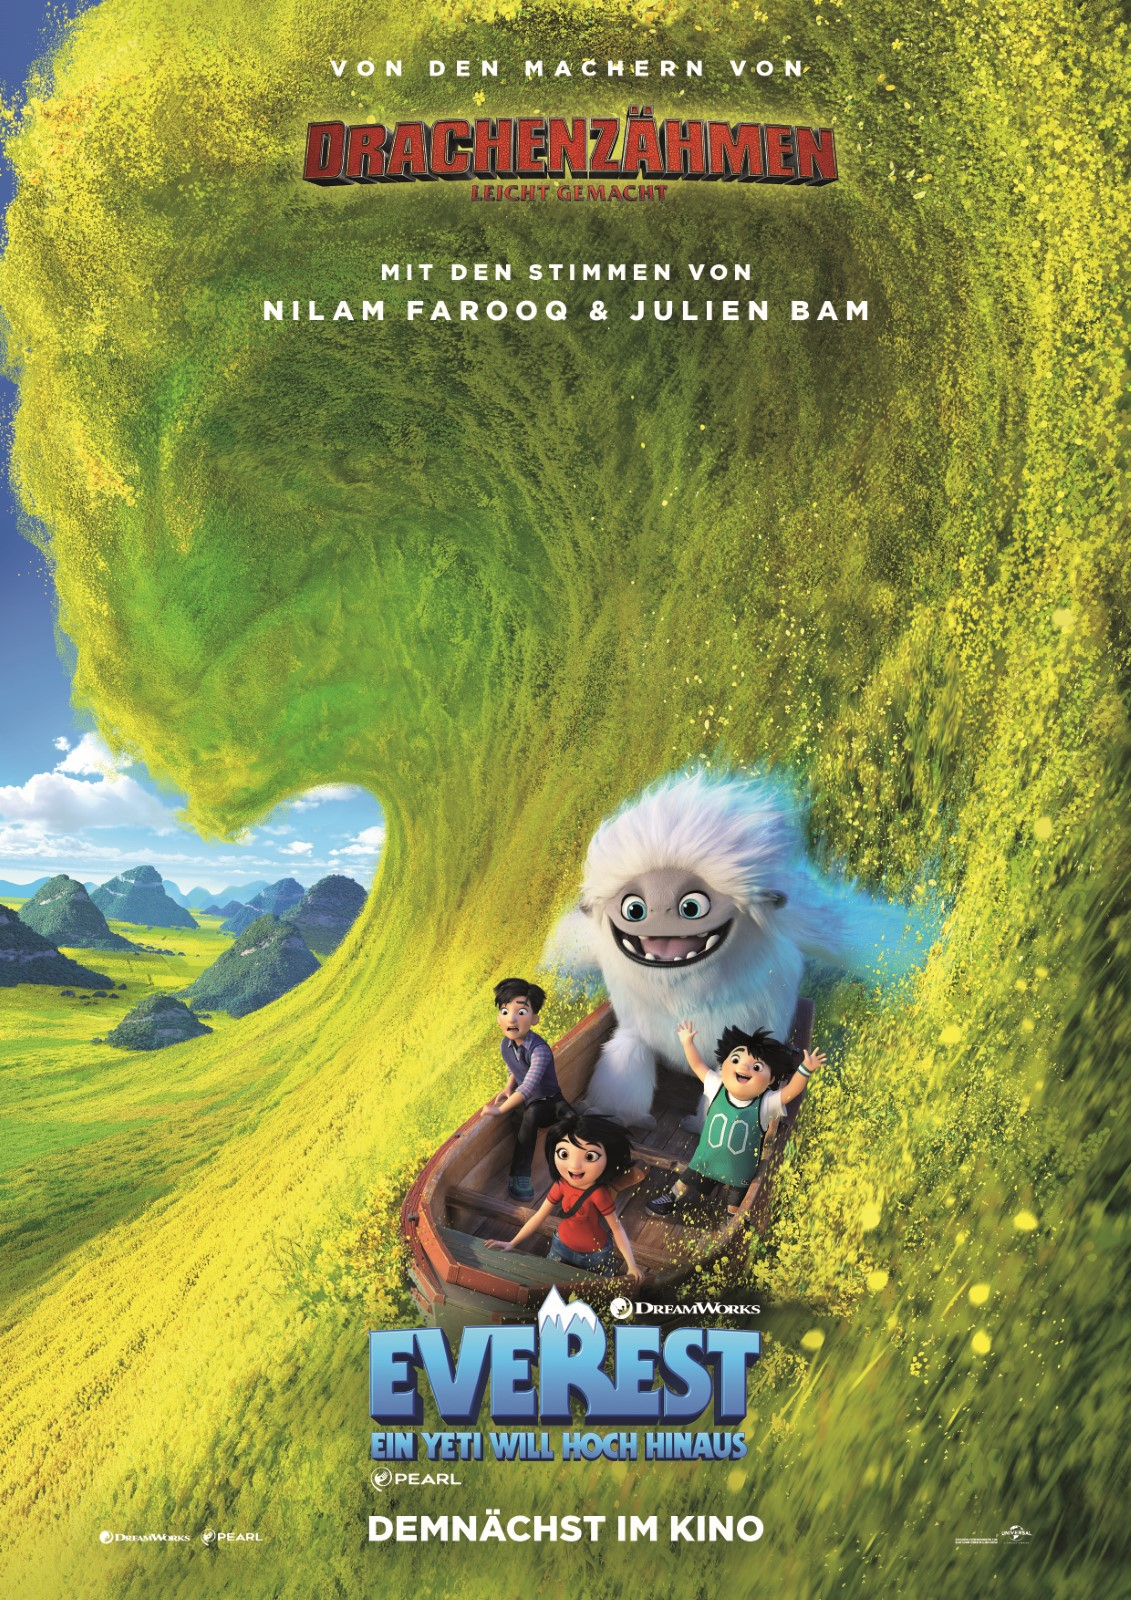 Everest - Ein Yeti Will Hoch Hinaus - Film 2019 - Filmstarts.de à Film D Animation Dreamworks